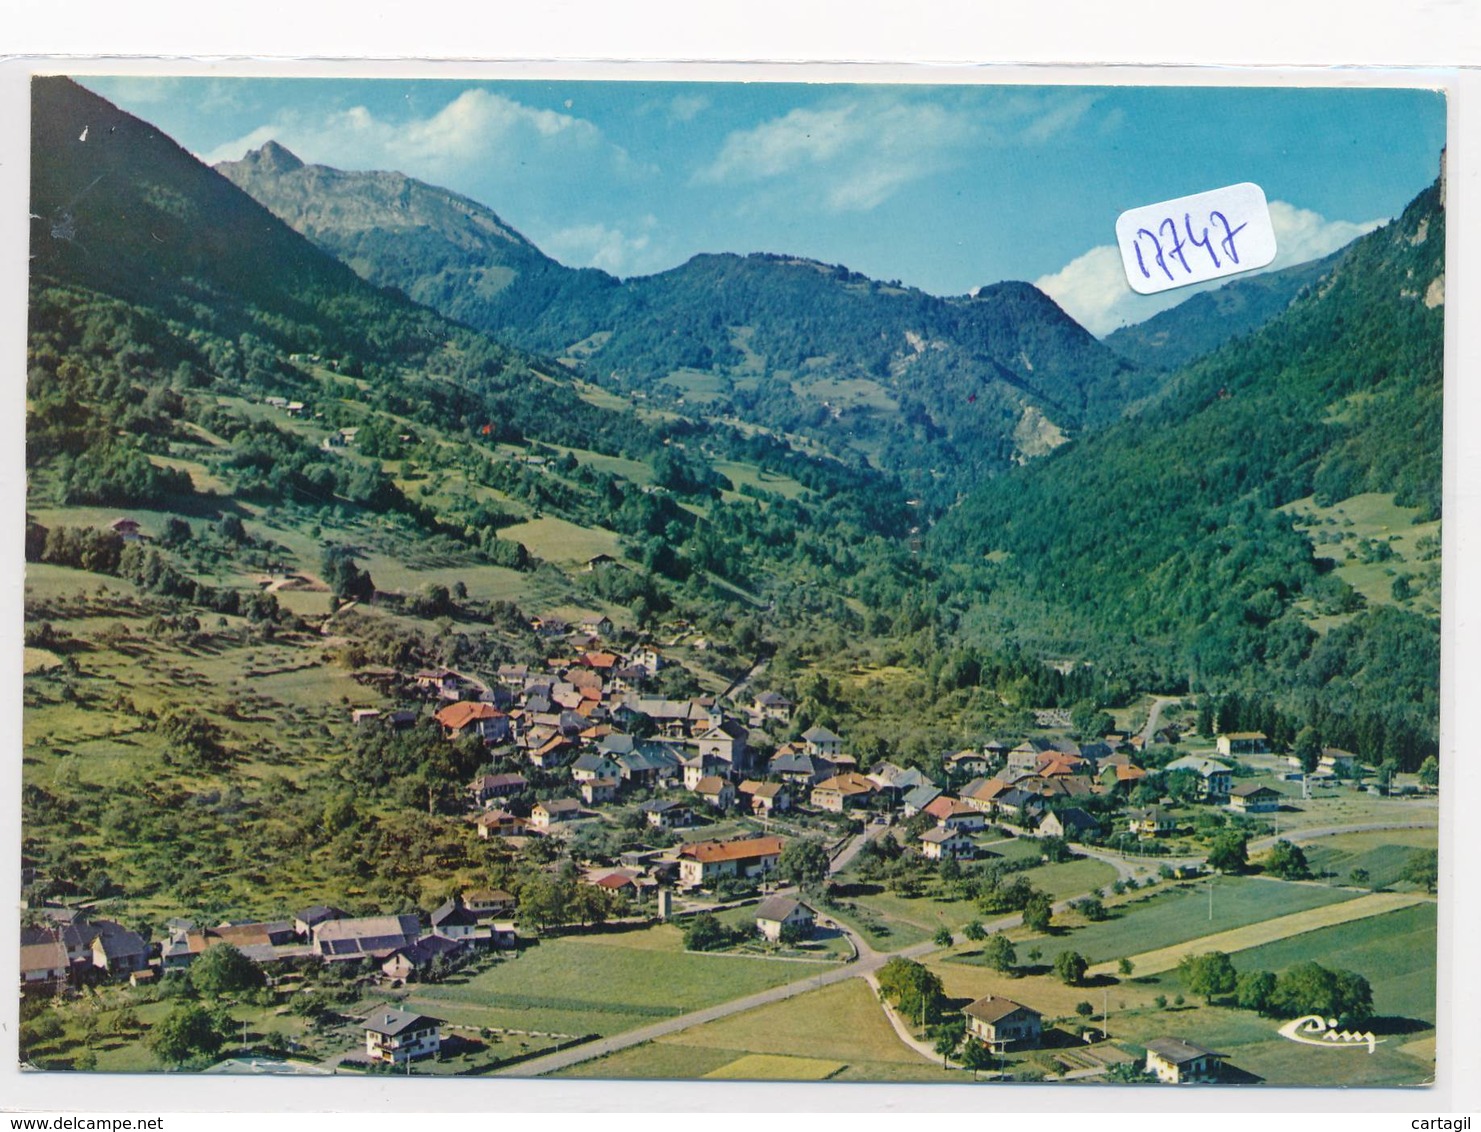 Lot - L321- 73-74 - Lot belle sélection  40 CPM GF vrac  des 2  départements de Savoie ( voir scans et description)